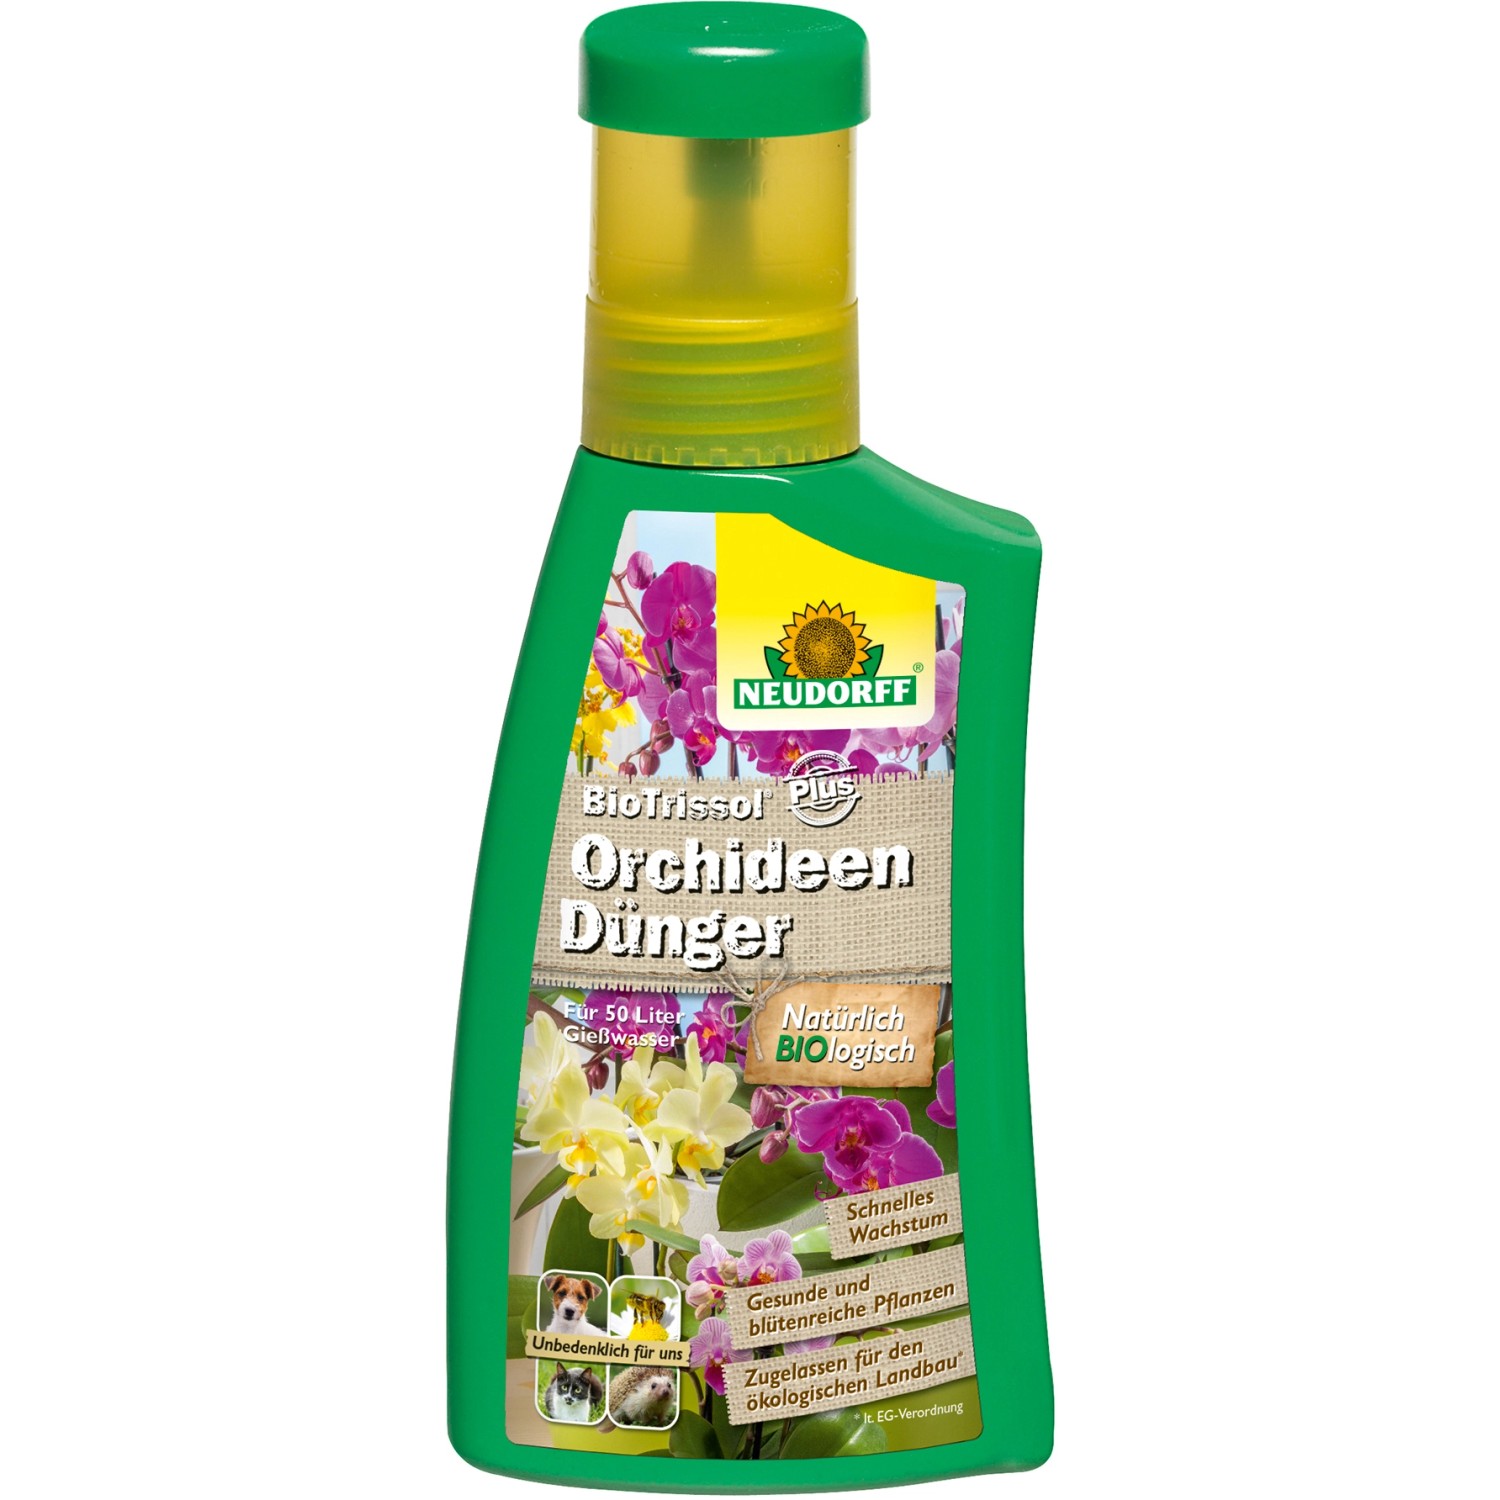 Neudorff Bio Trissol Plus Orchideen-Dünger 250 ml von Neudorff